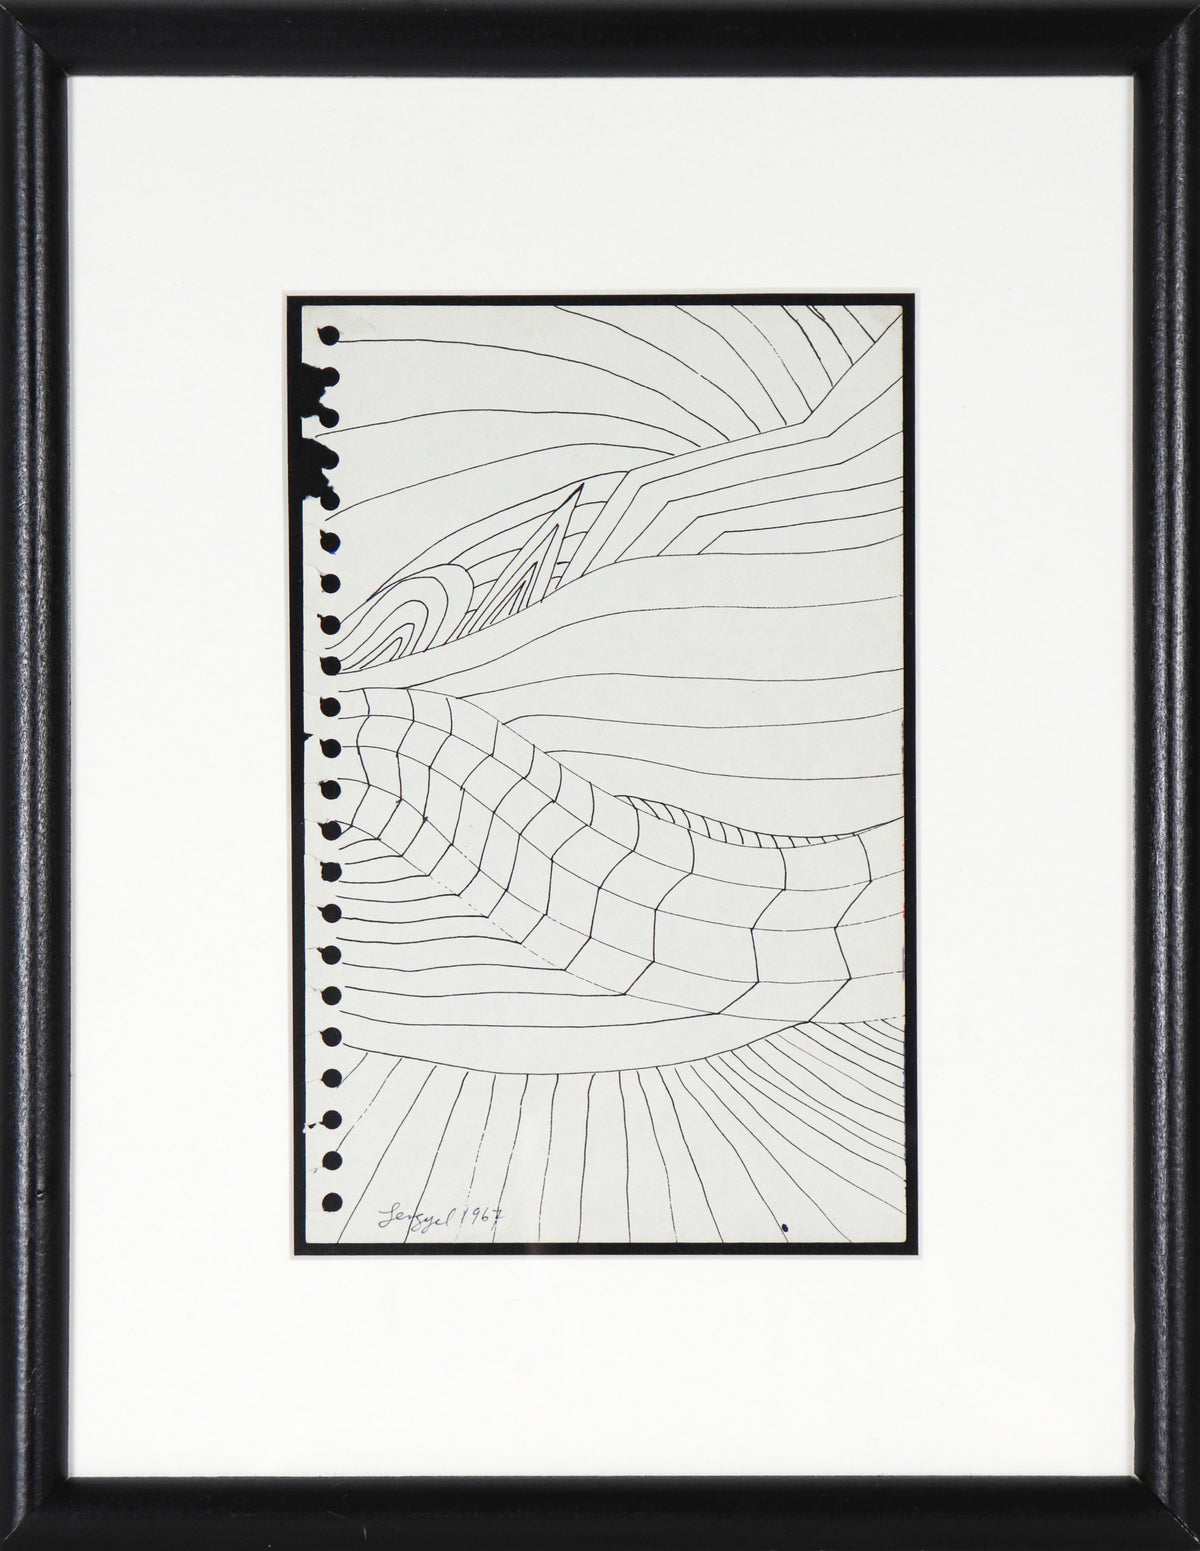 Modernist Line Drawing &lt;br&gt;1967 Ink on Paper &lt;br&gt;&lt;br&gt;#58258